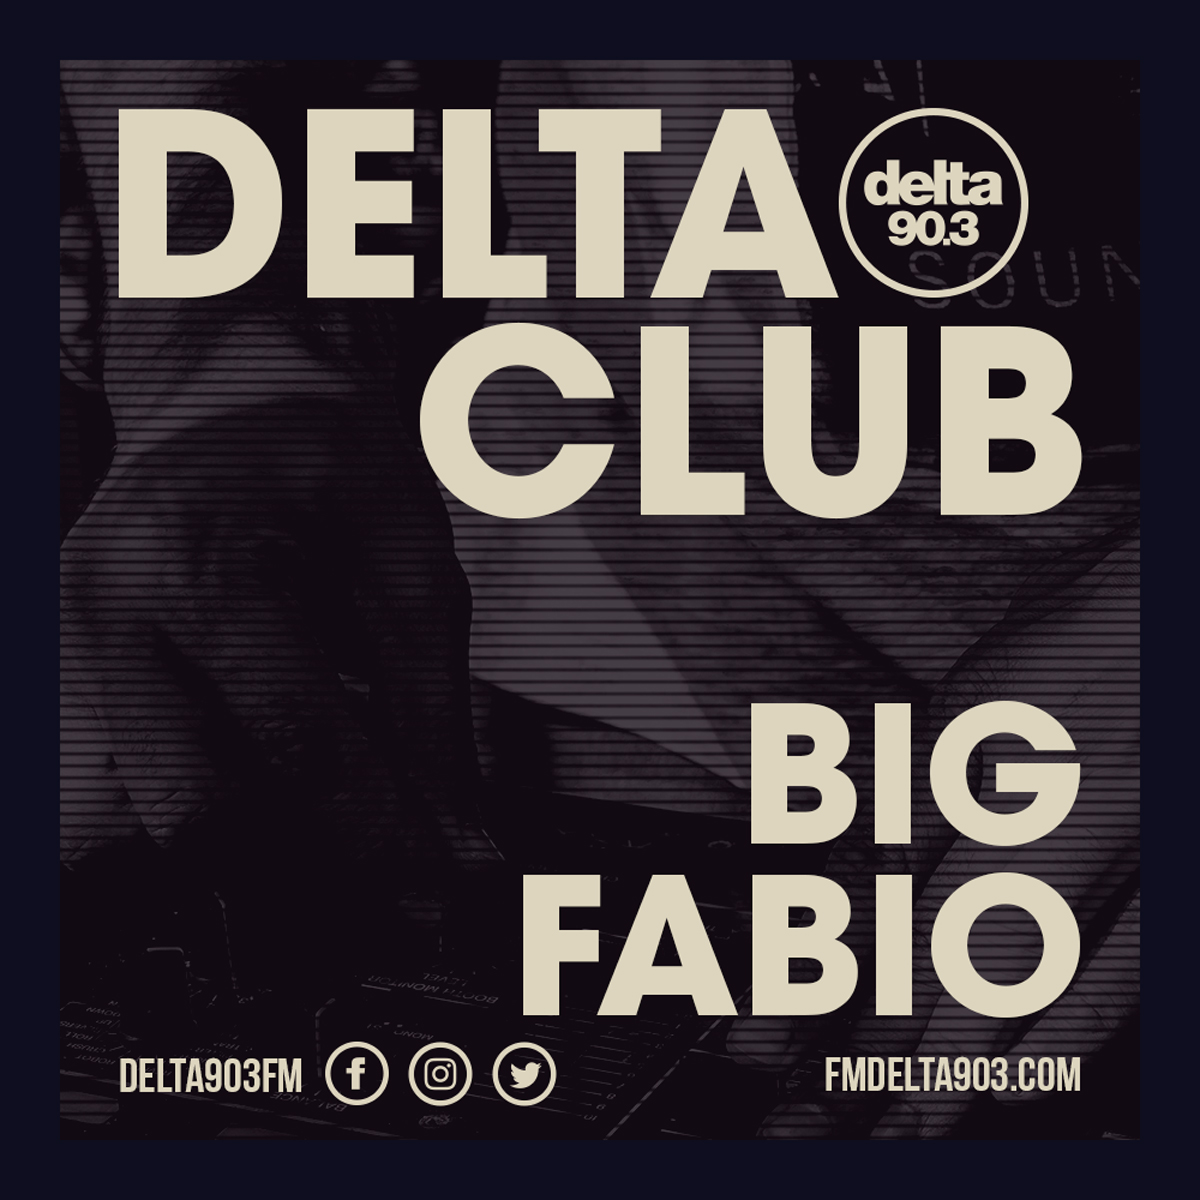 Delta Podcasts - Delta Club presents Big Fabio (27.06.2018)